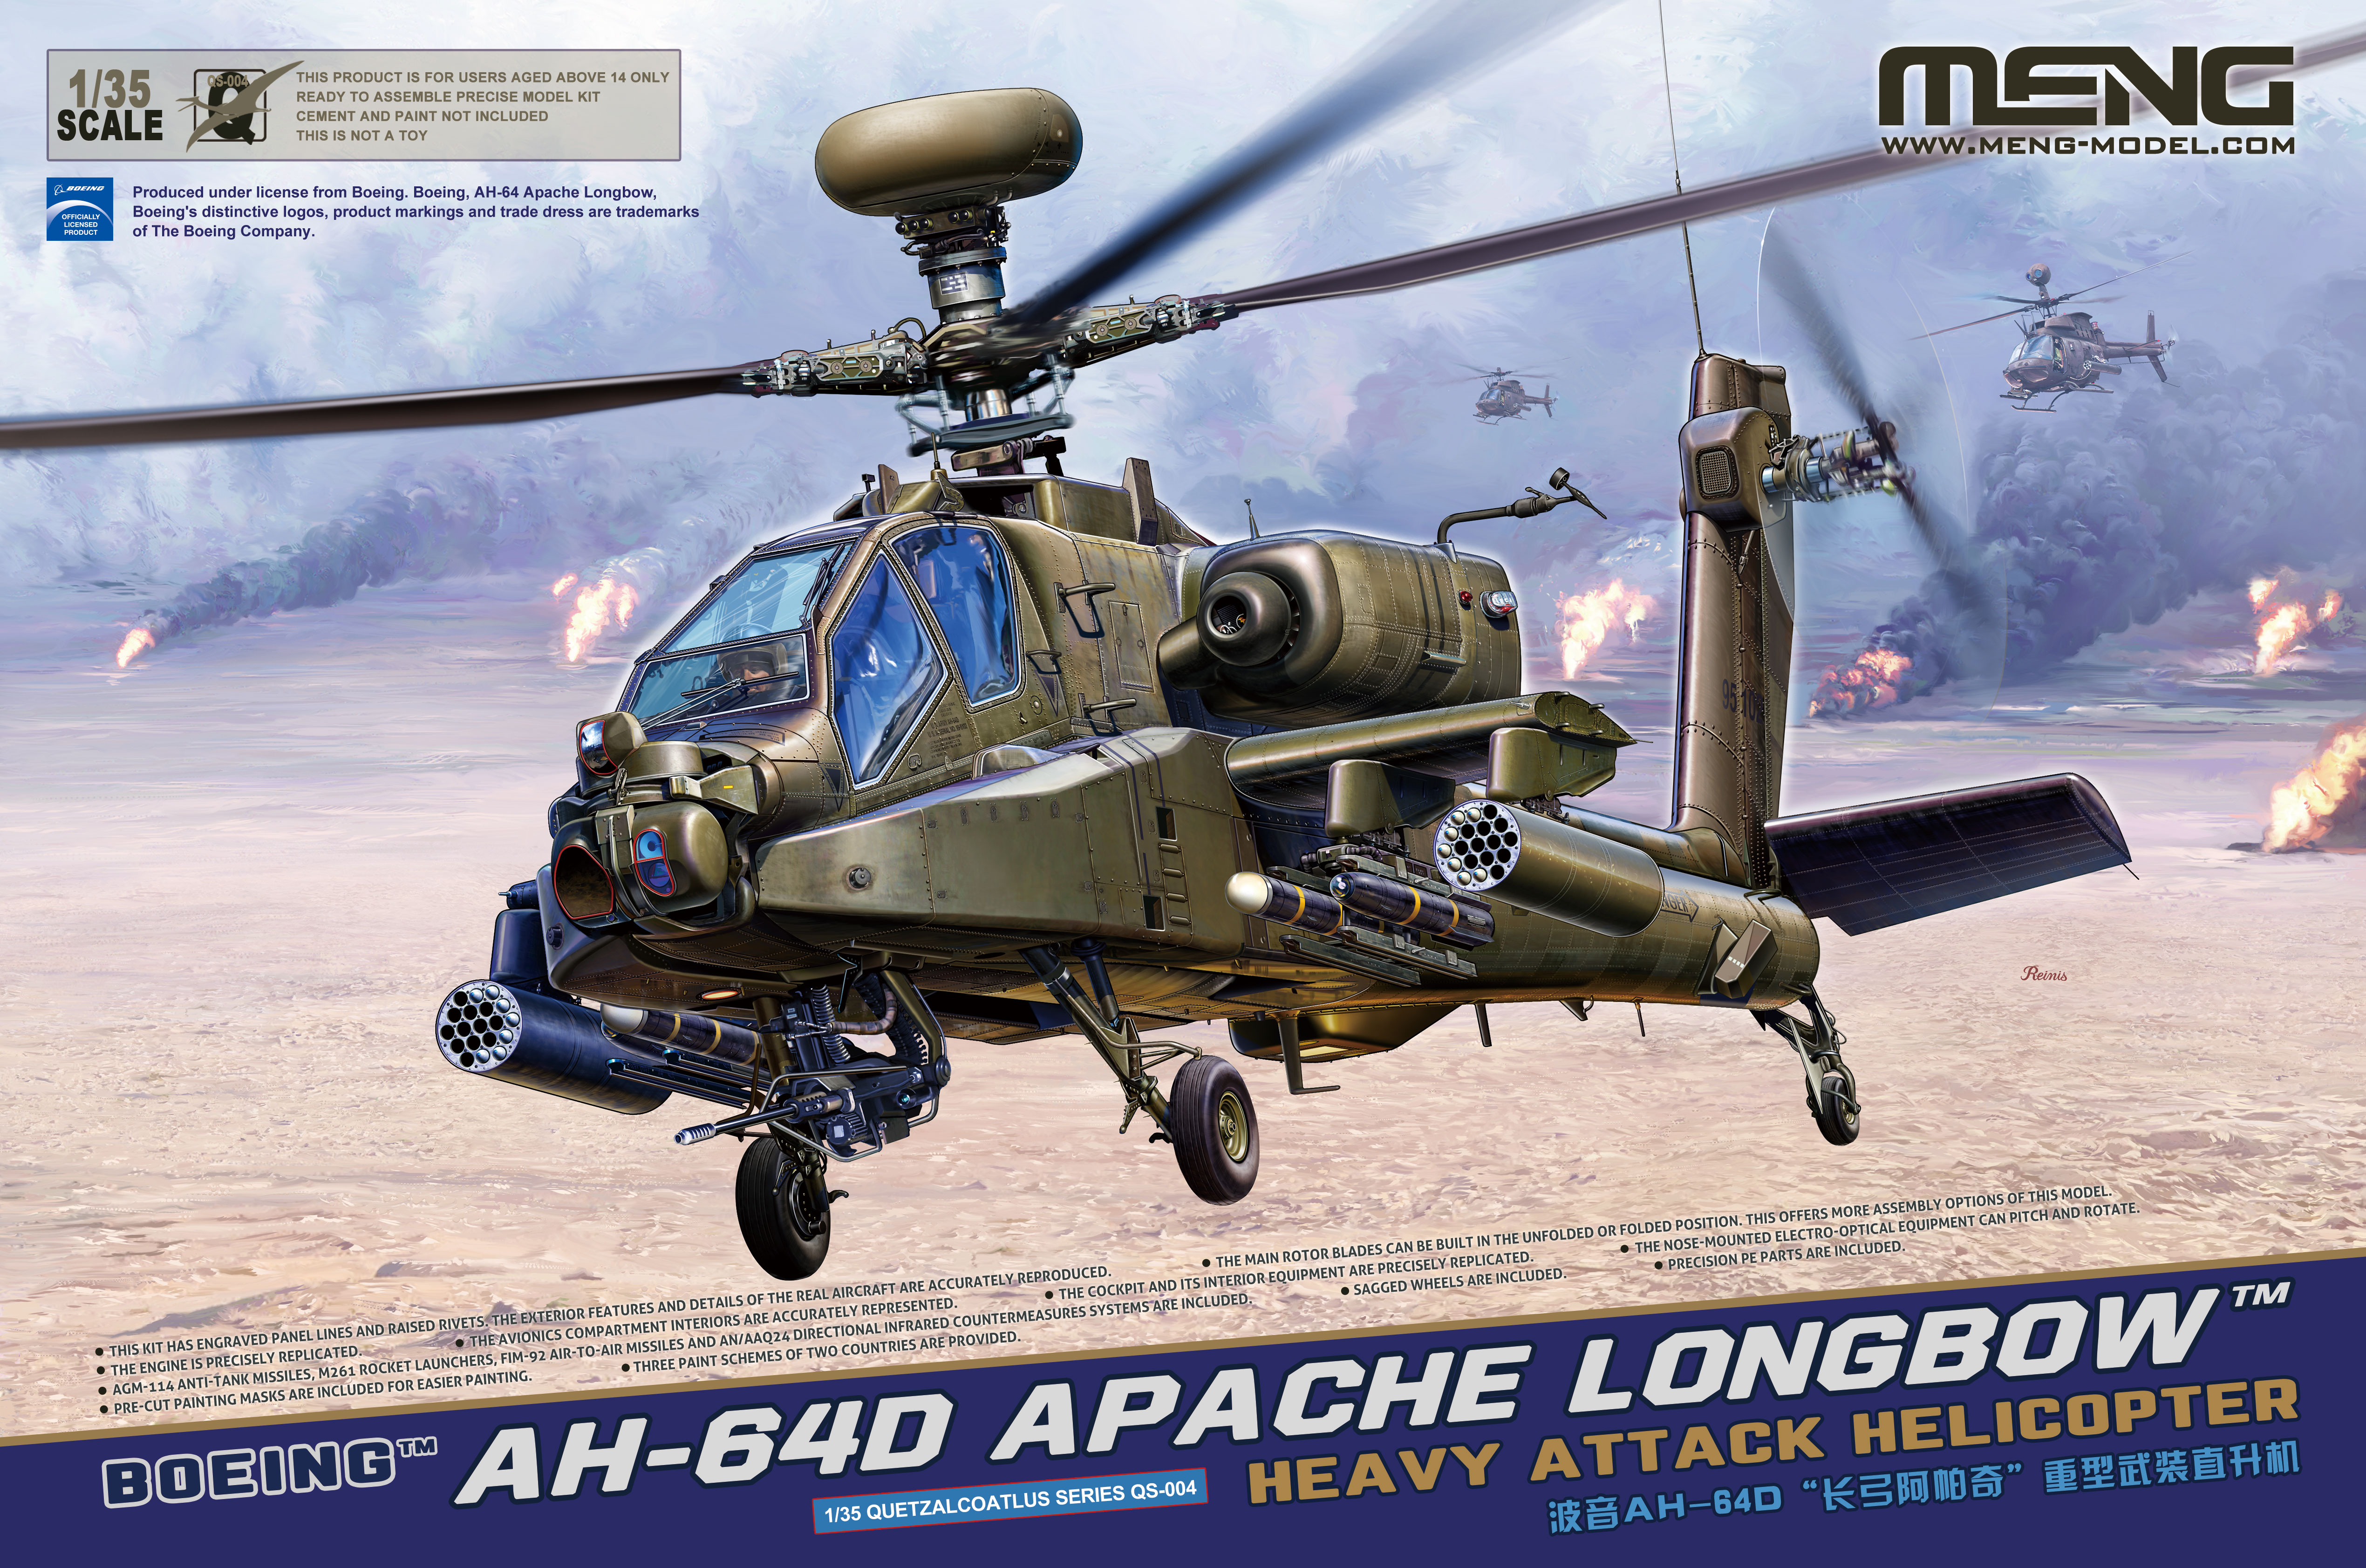 1/35 ボーイング AH-64D アパッチ・ロングボウ戦闘ヘリコプター
